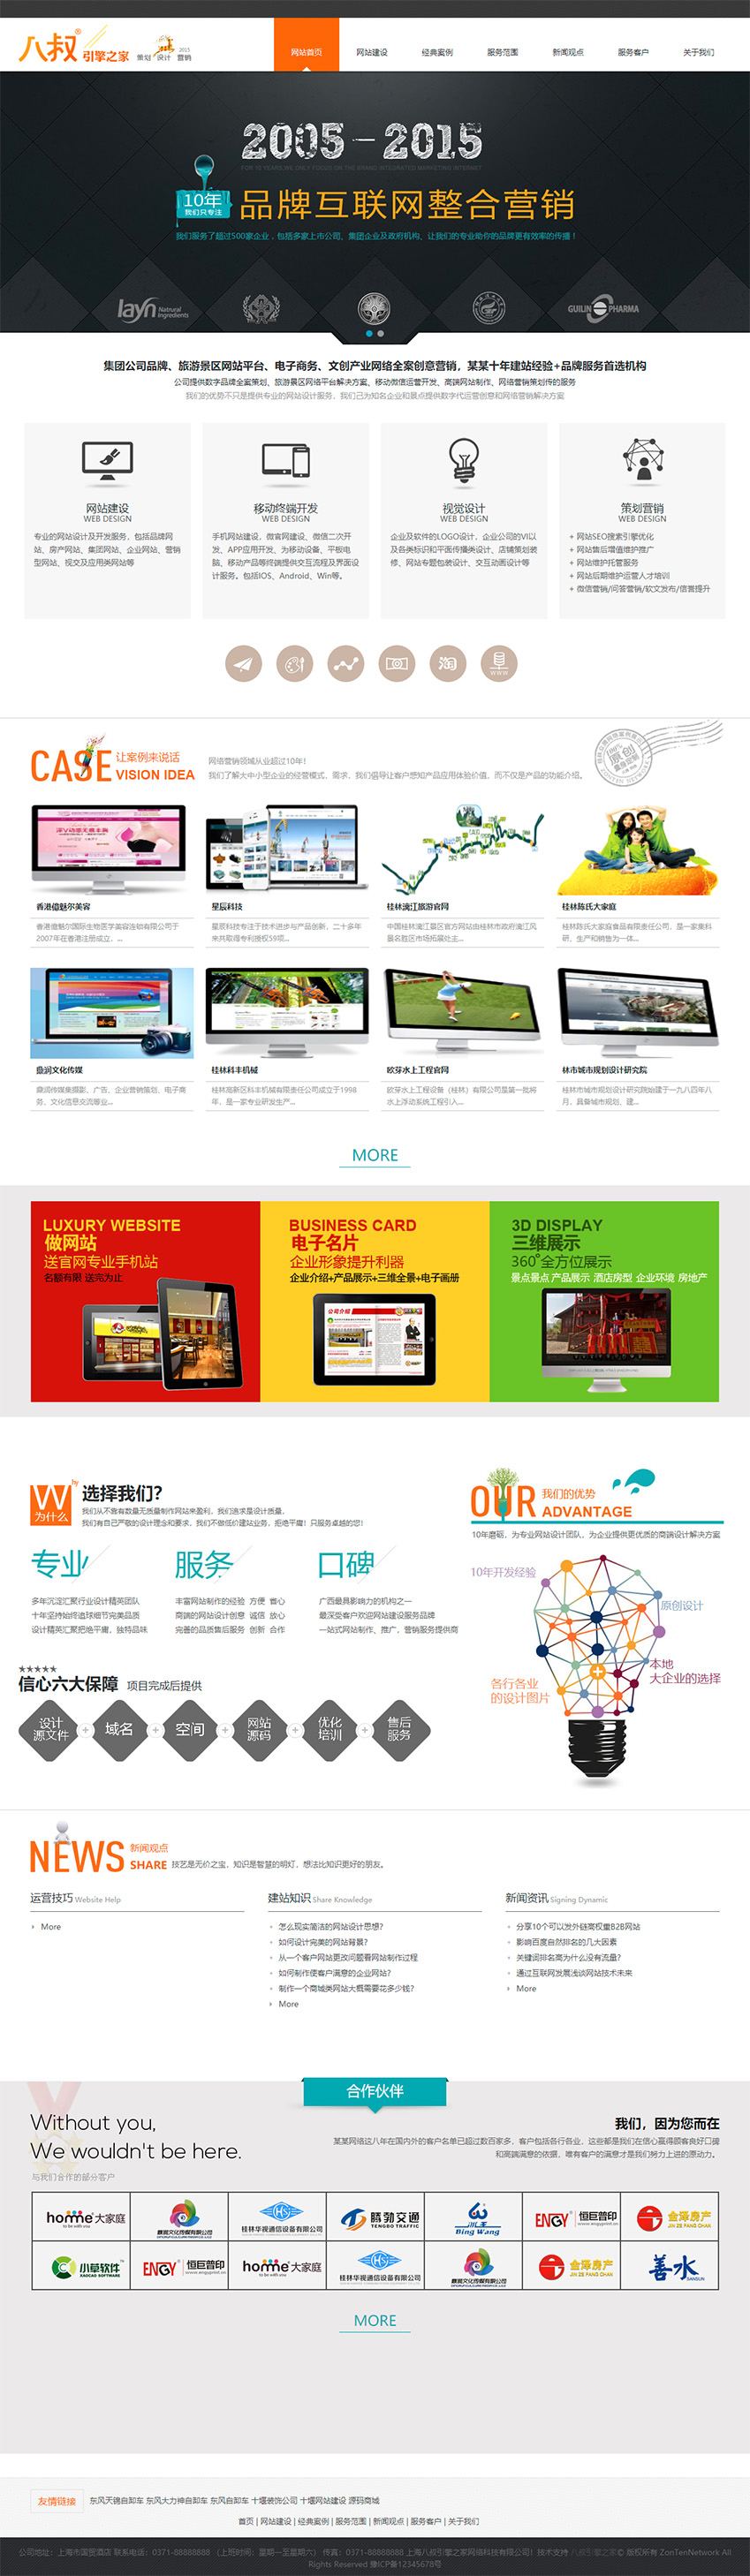 免费互联网企业网站建设公司企业网站html模板